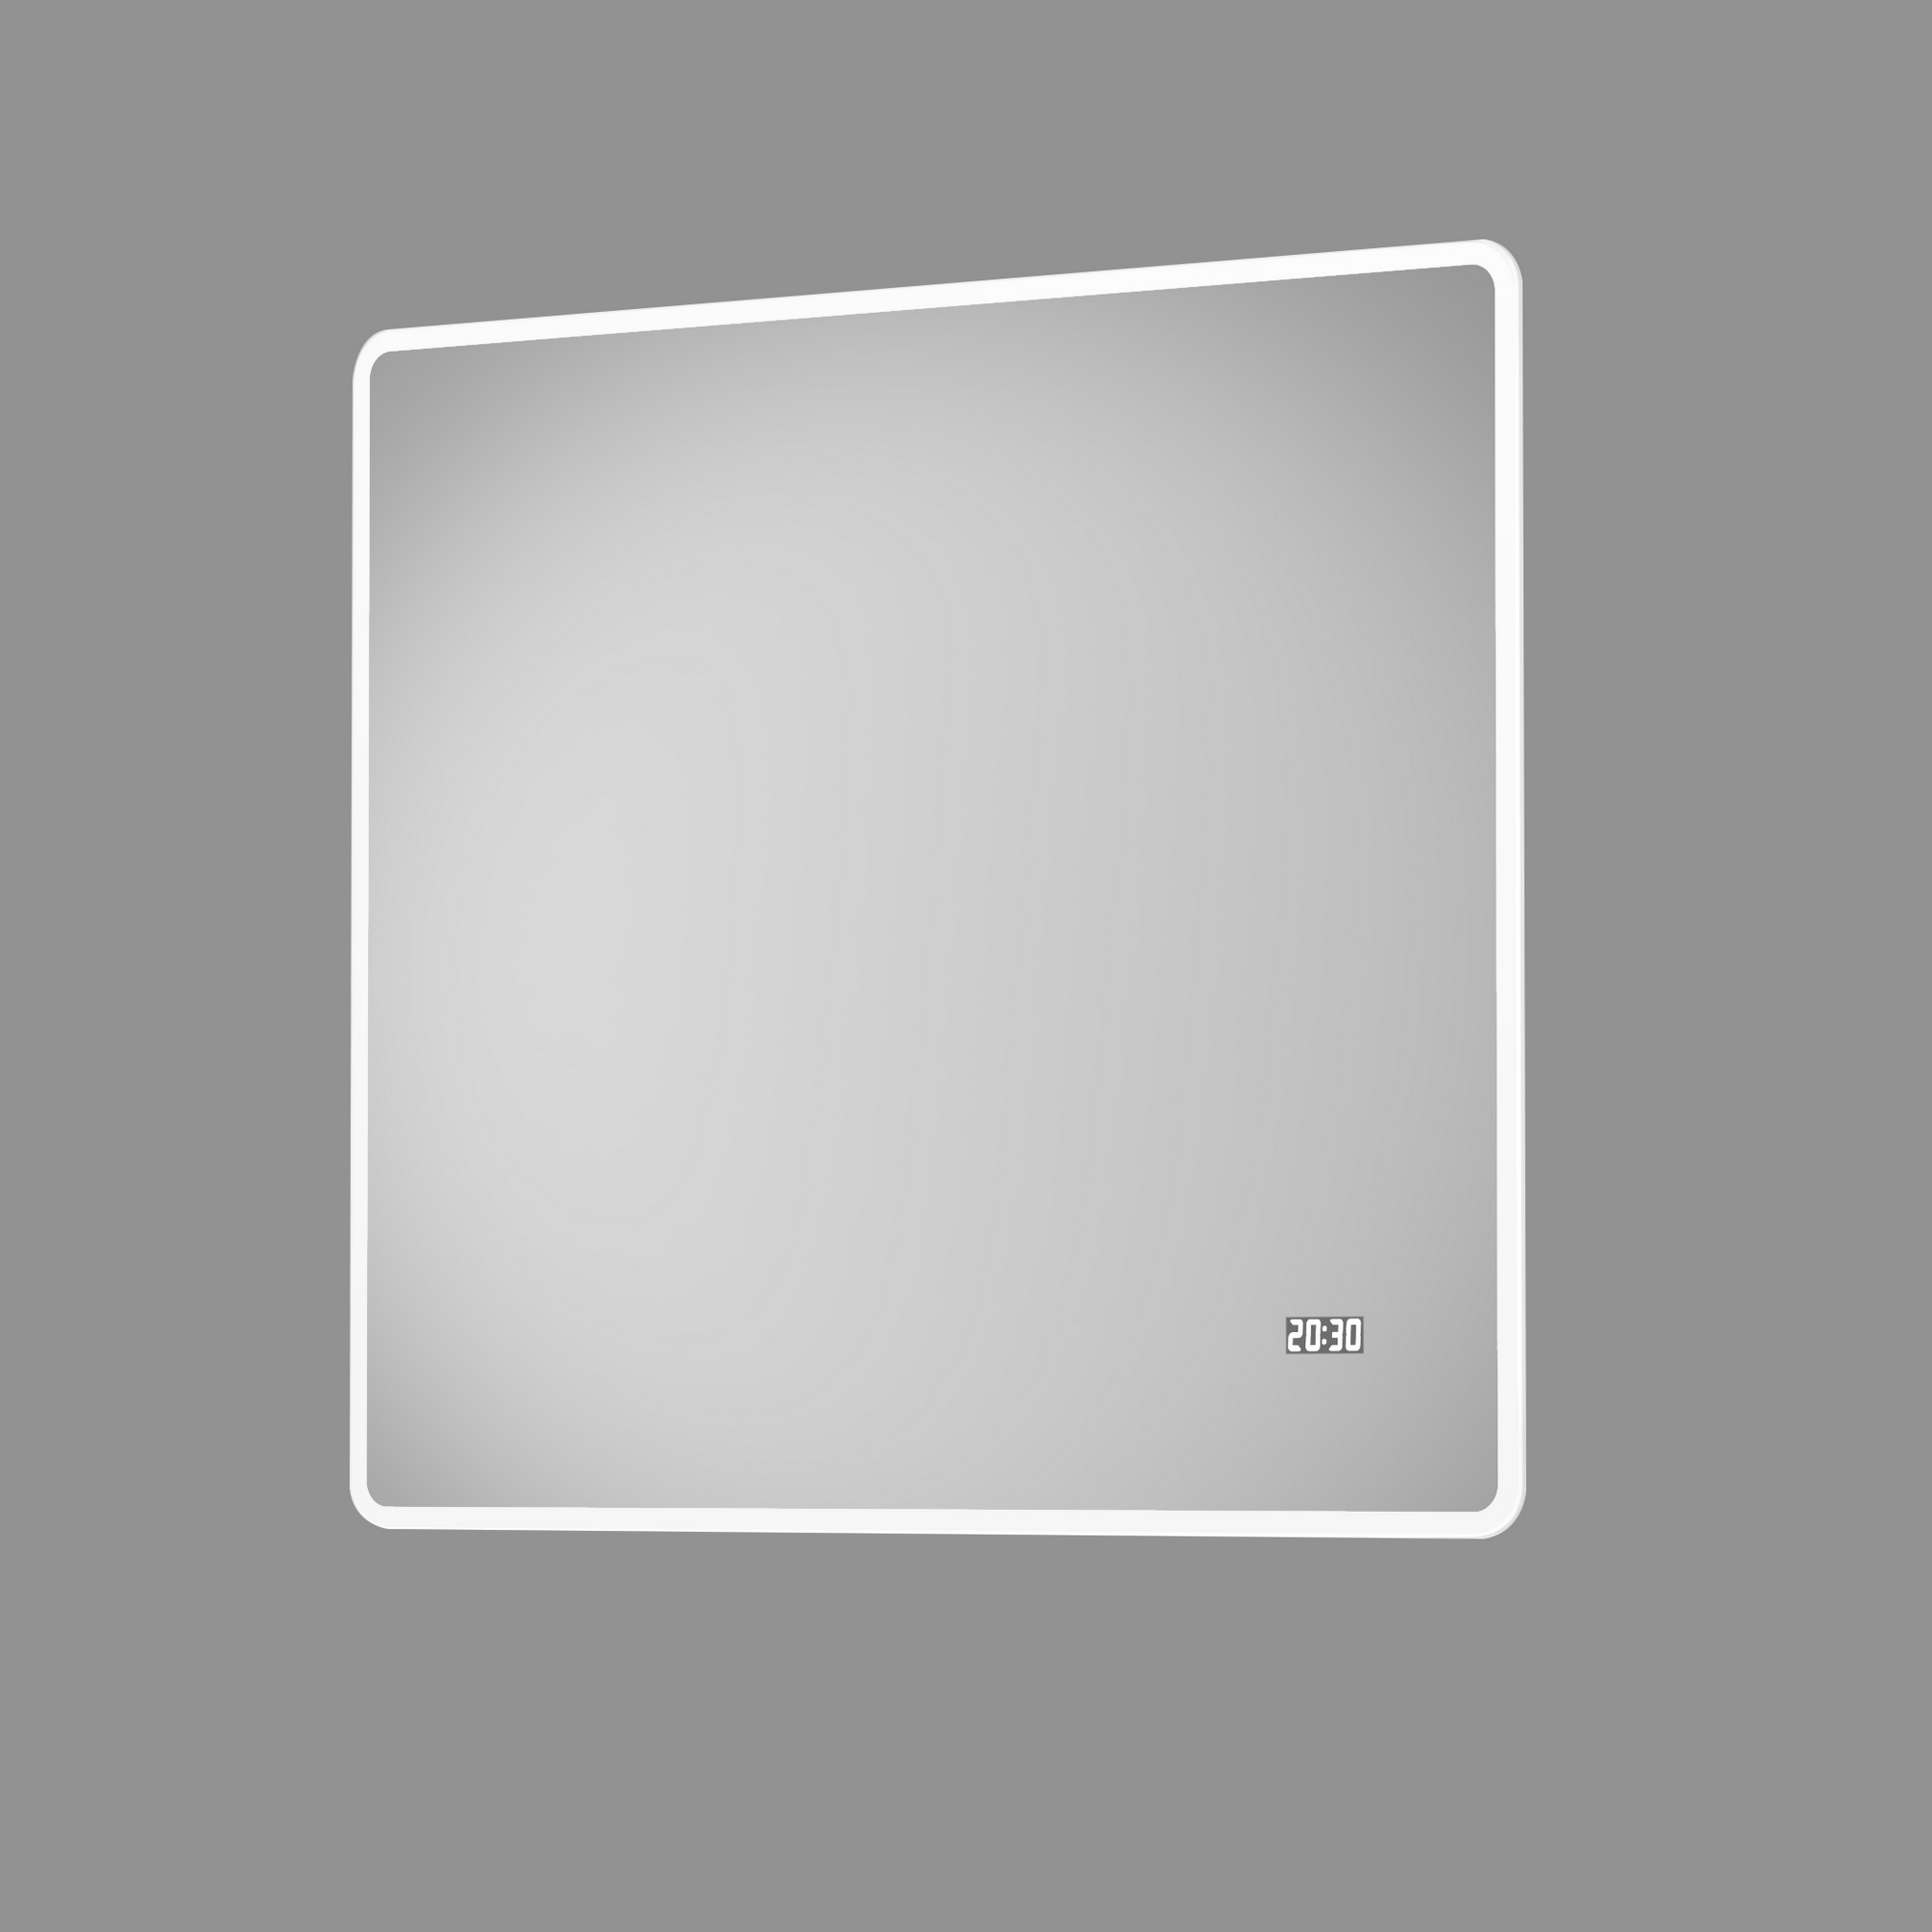 LED-Spiegel 'Silver Sunshine 2.0' mit Uhr 80 x 70 cm + product picture